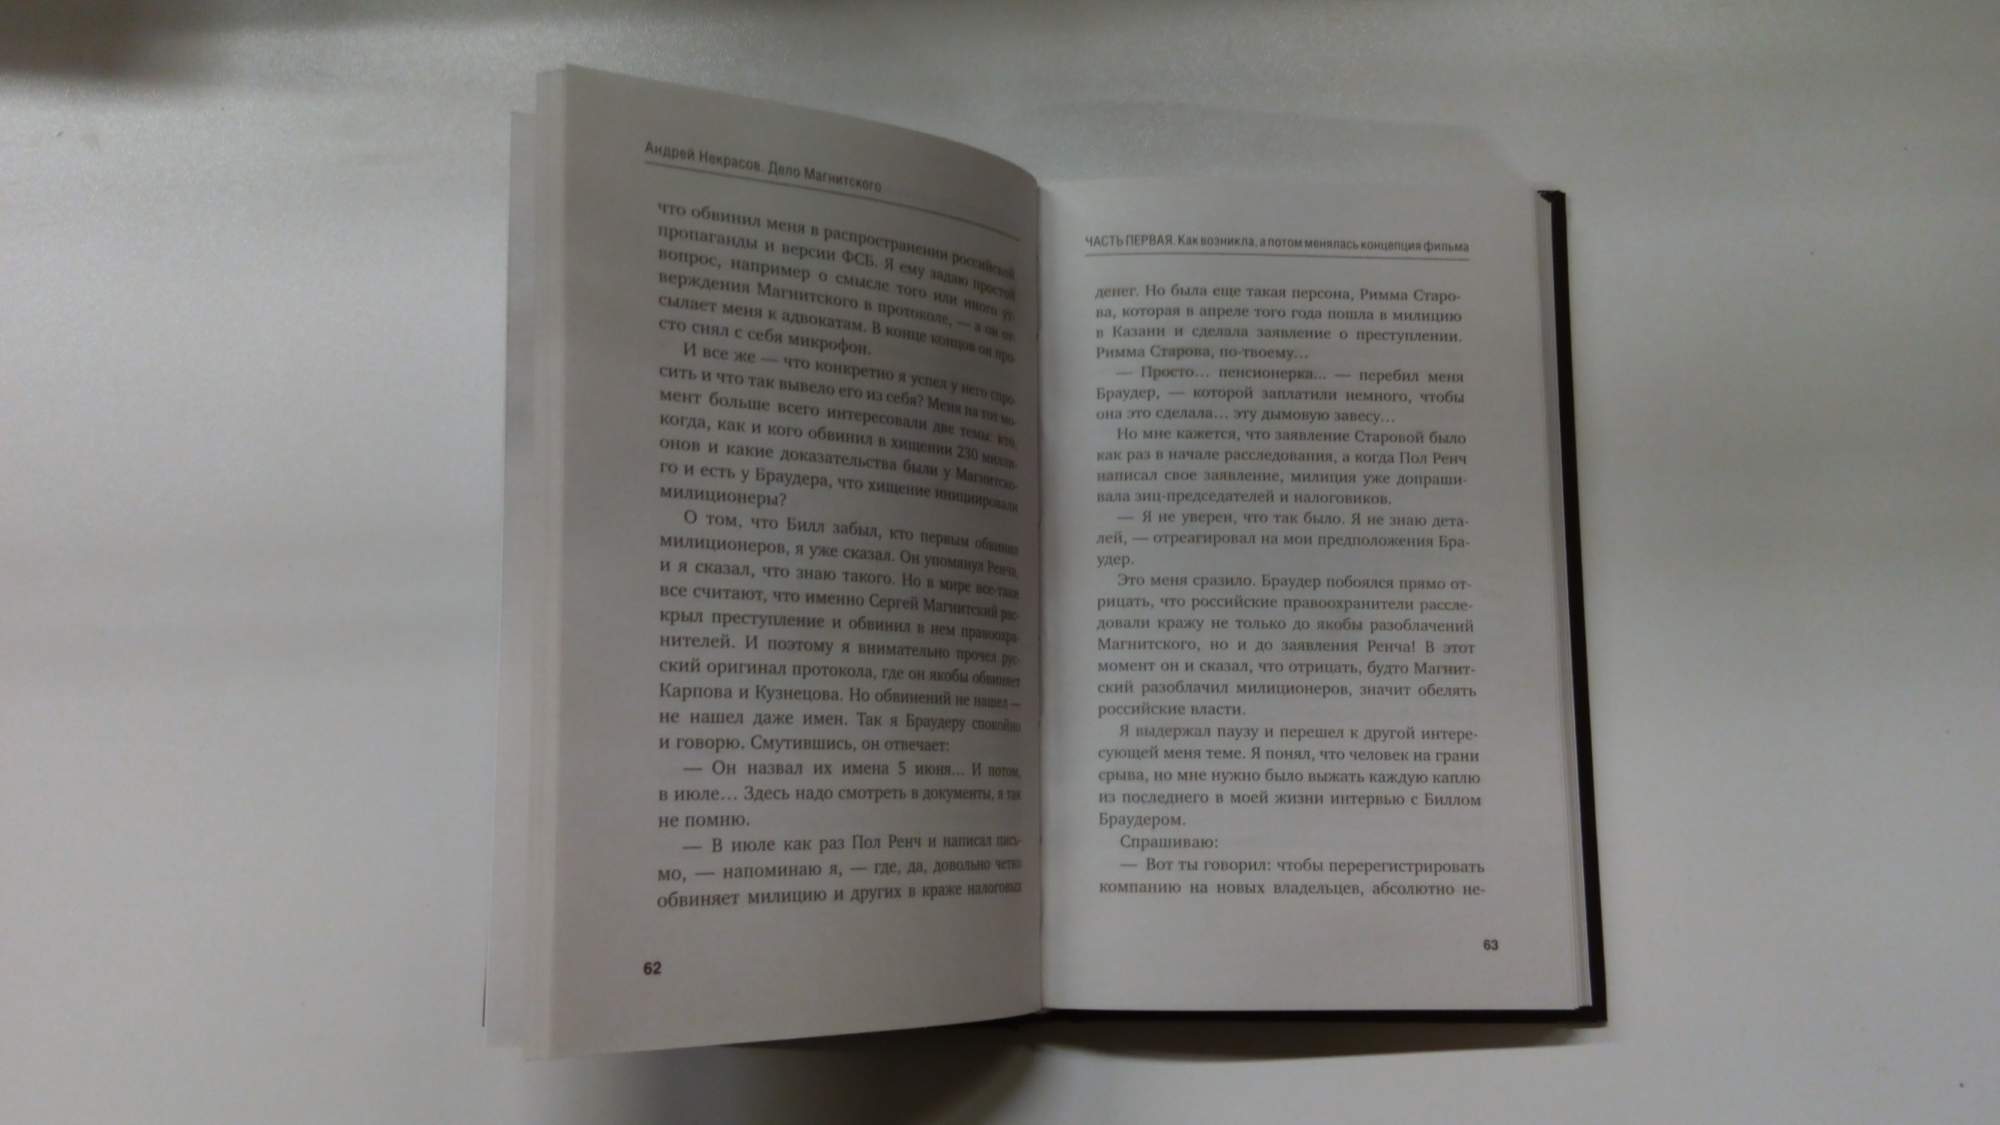 Читать новое начало книга. Книга Магнитского. Начни с почему книга. Это ее дело книга отзывы. ISBN 5-93557-002-5.